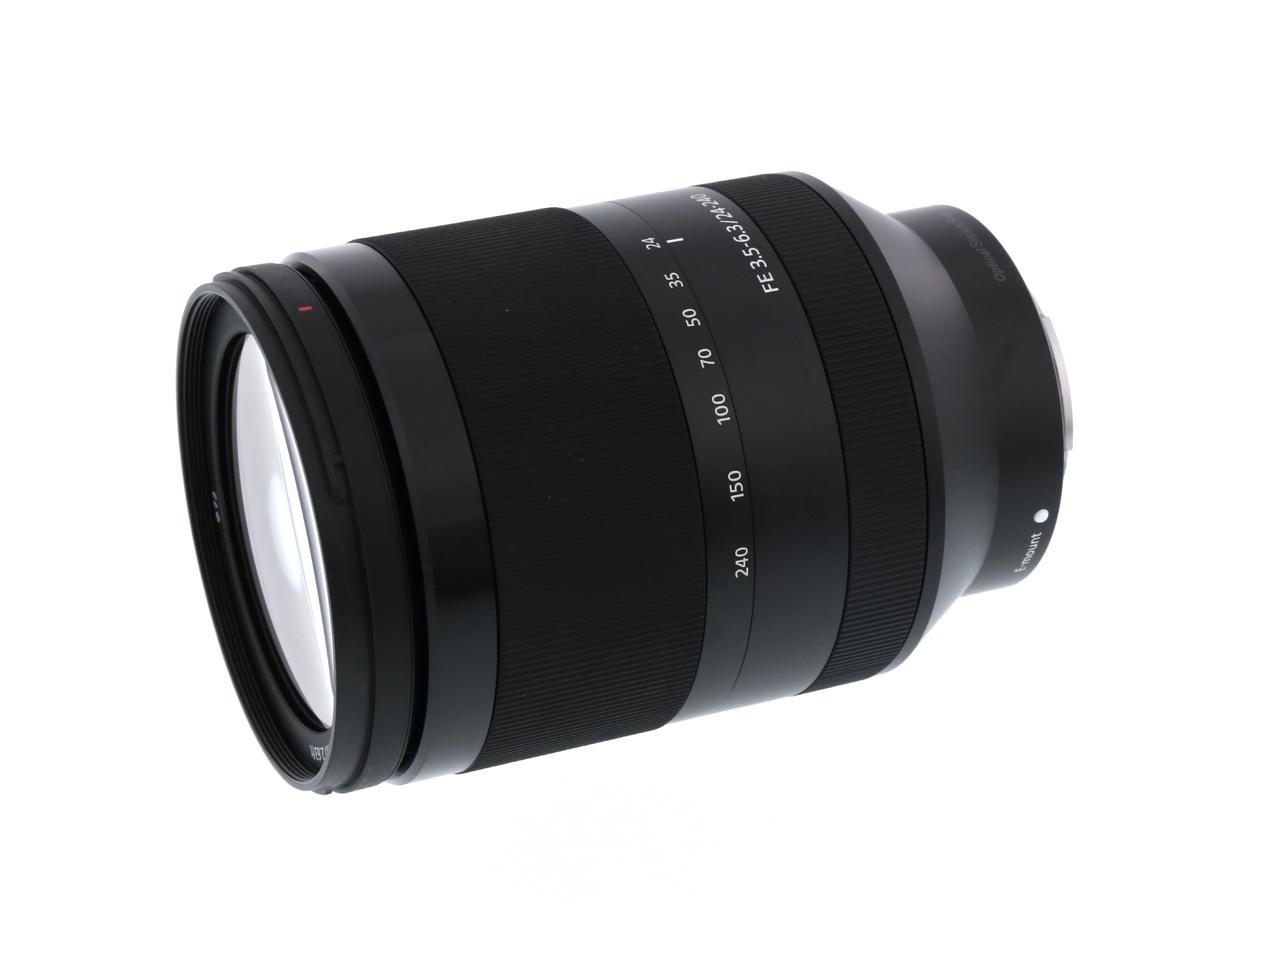 SONY SEL24240 SEL24240 FE 24-240mm F3.5-6.3 OSS Full-frame Zoom Lens Black